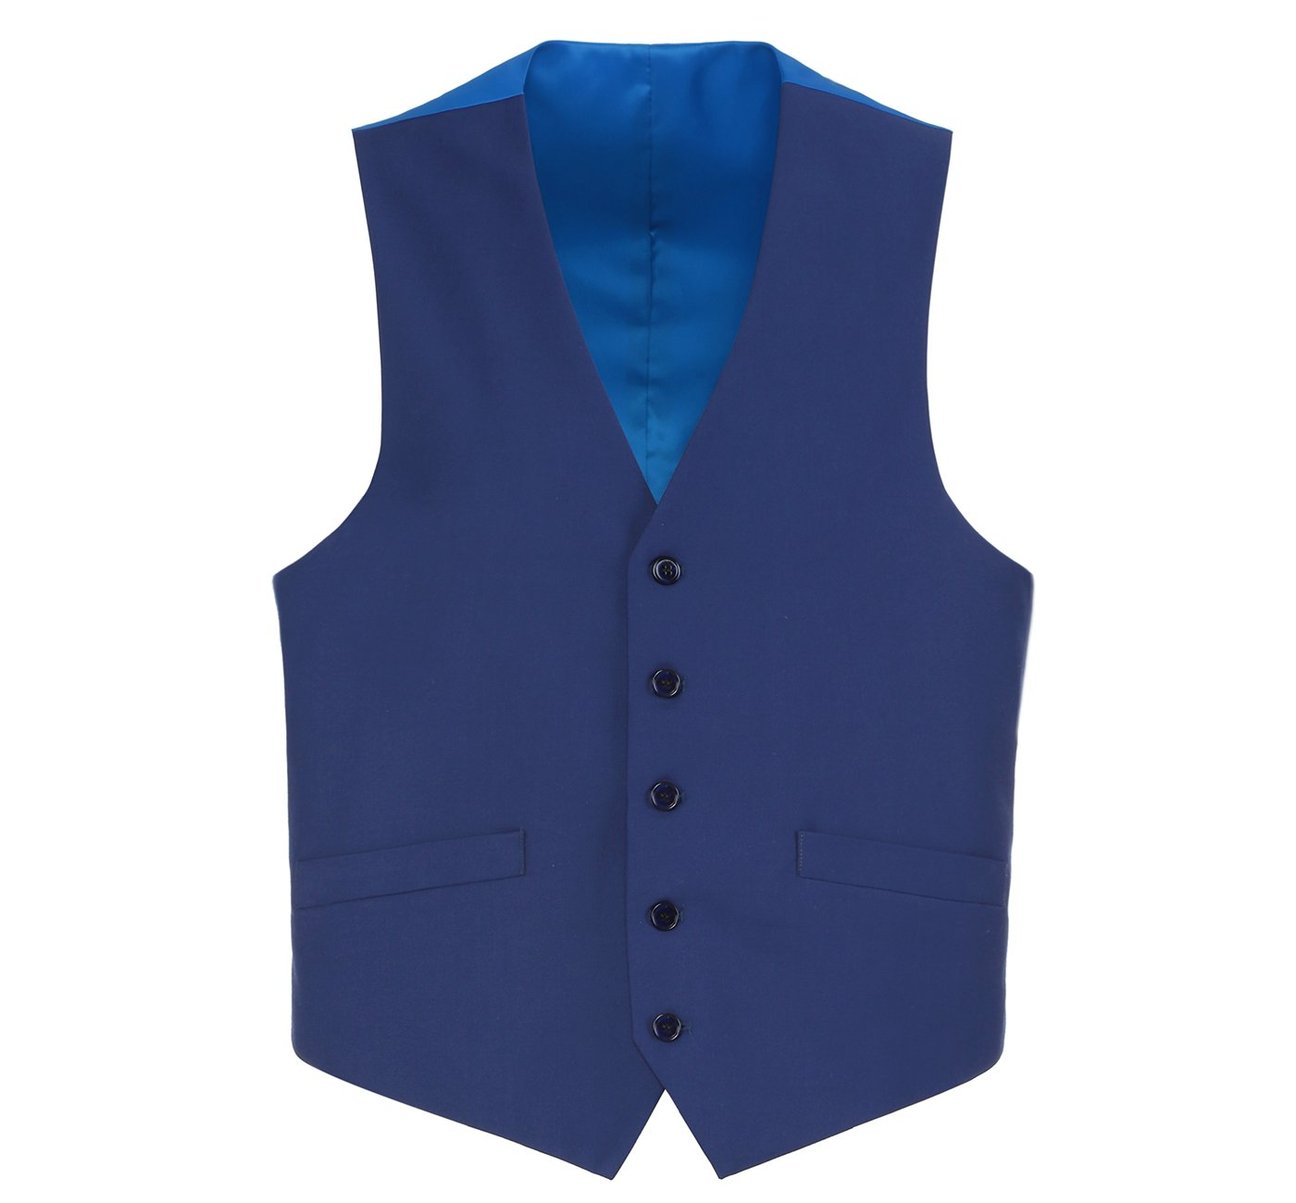 RENOIR Royal Blue Business Suit Vest Regular Fit Dress Suit Waistcoat 201-20